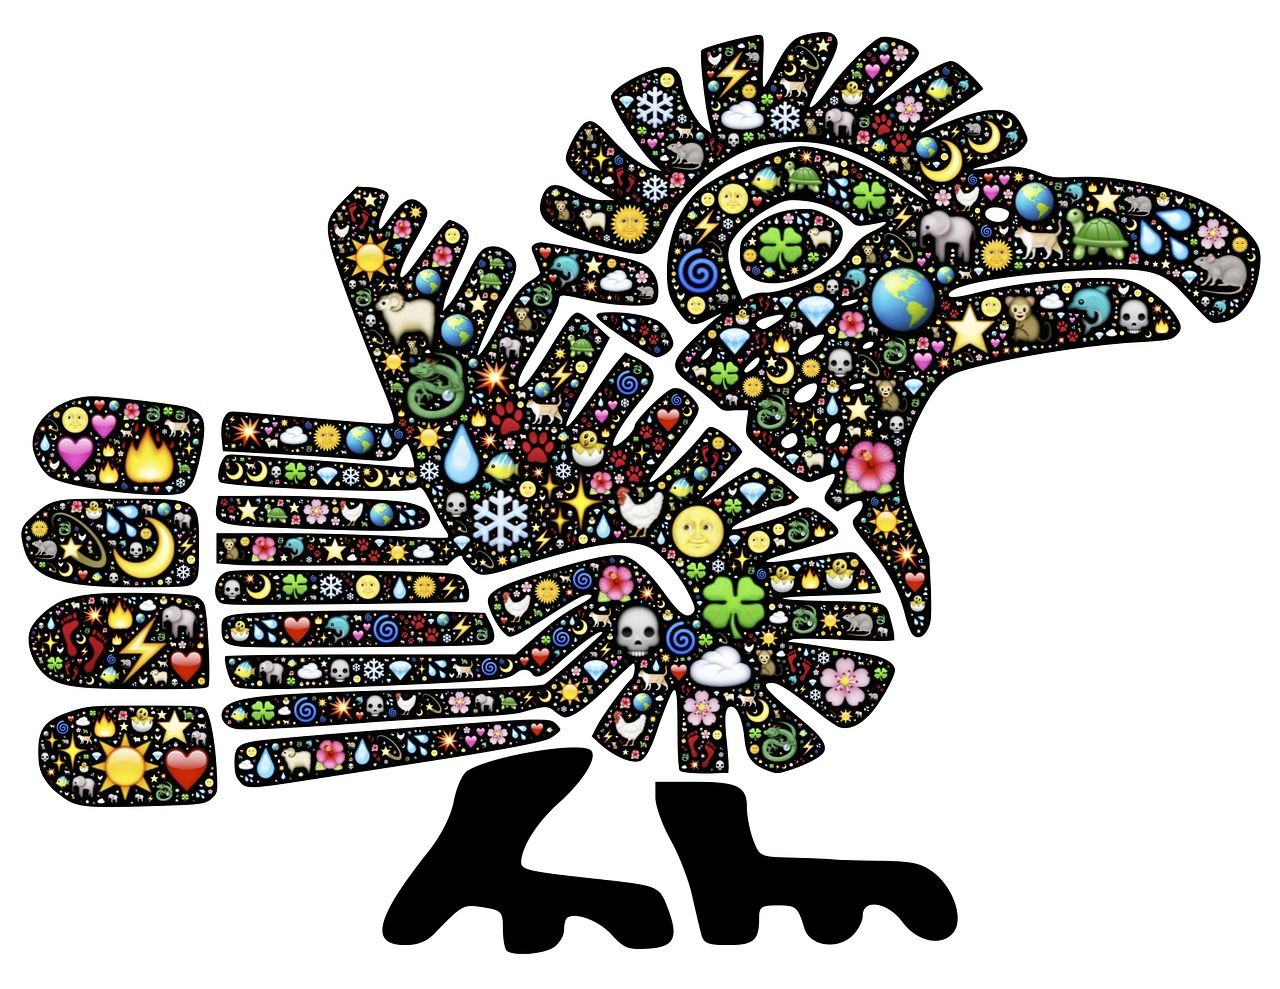 aves mitológicas mayas